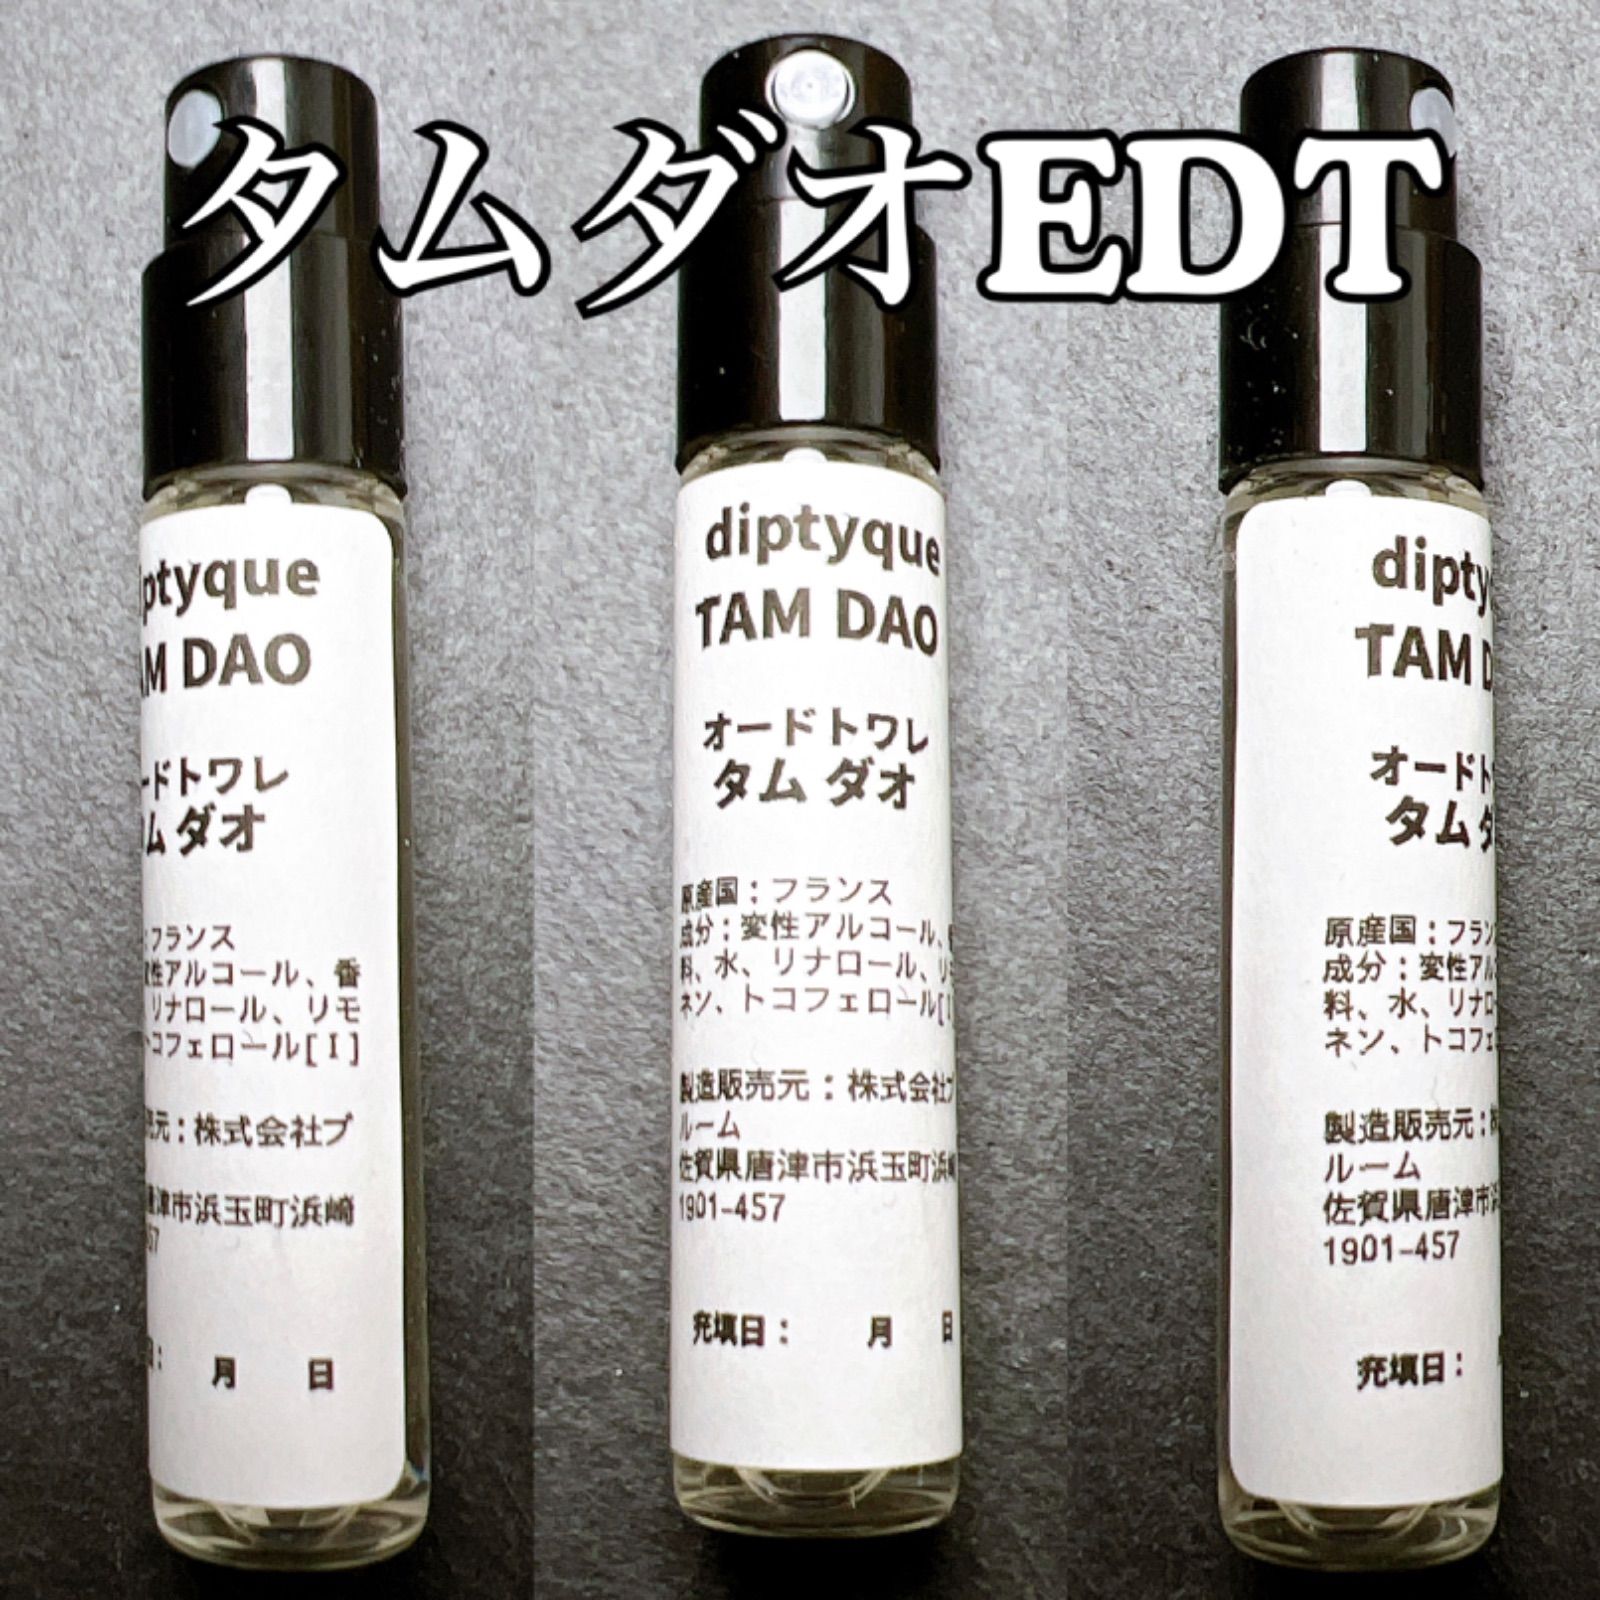 ディプティック diptyque TAMDAO タムダオ 10ml 香水 - 香水(ユニセックス)